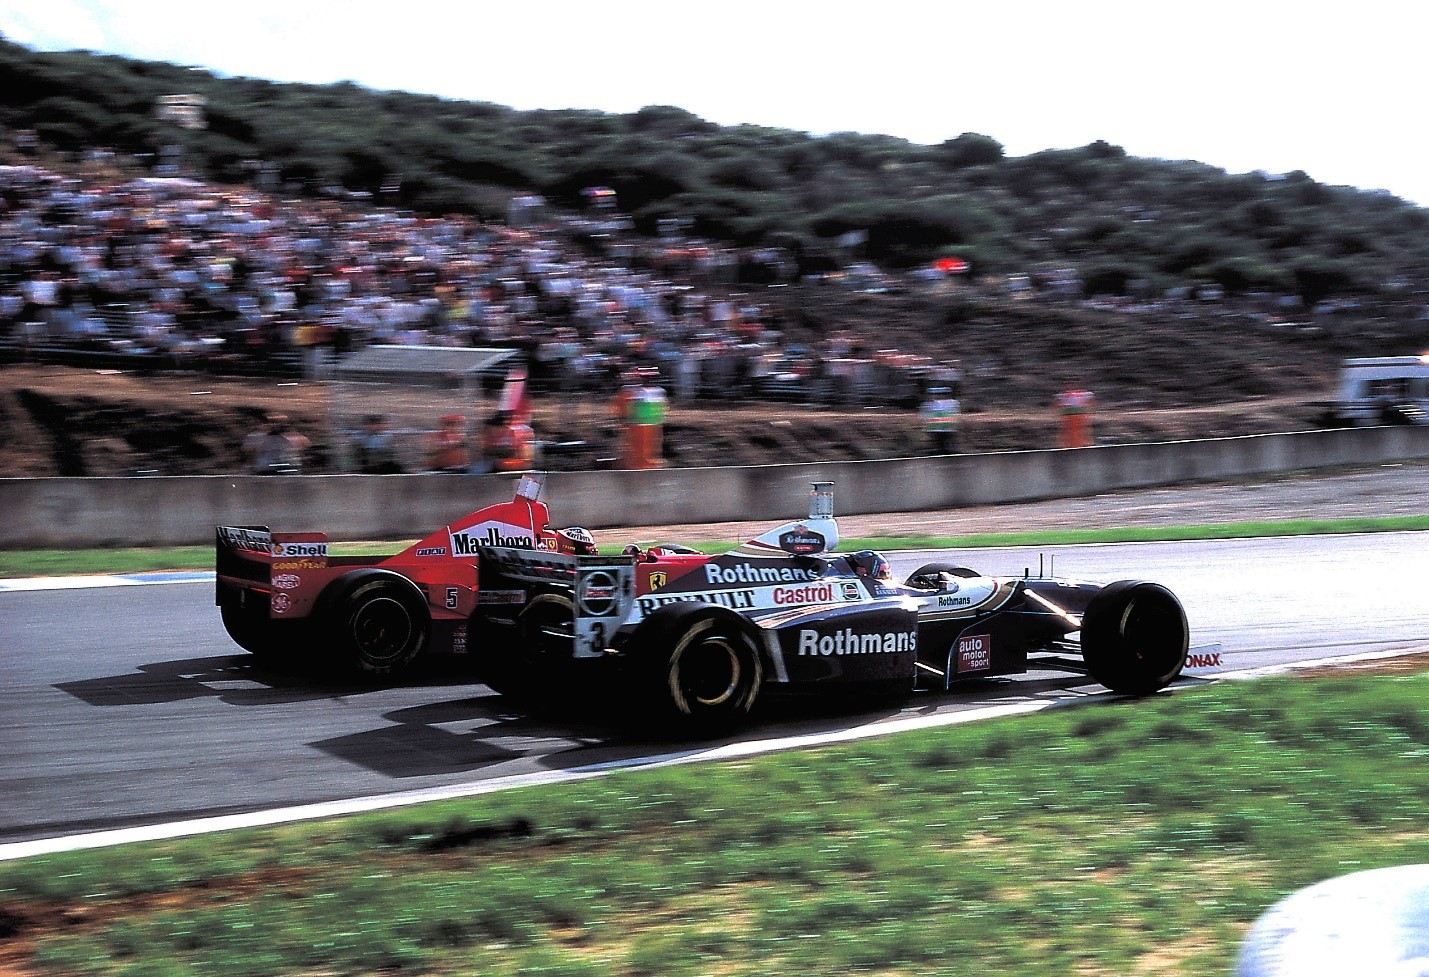 A duel between a Williams and a Ferrari.